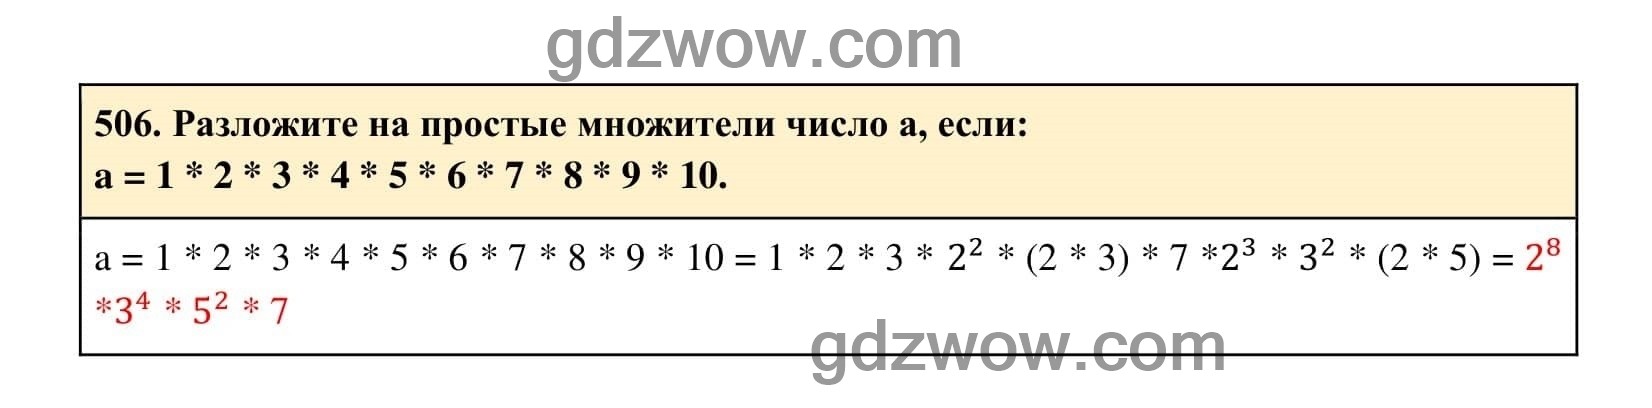 Упражнение 506 - ГДЗ по Алгебре 7 класс Учебник Макарычев (решебник) - GDZwow